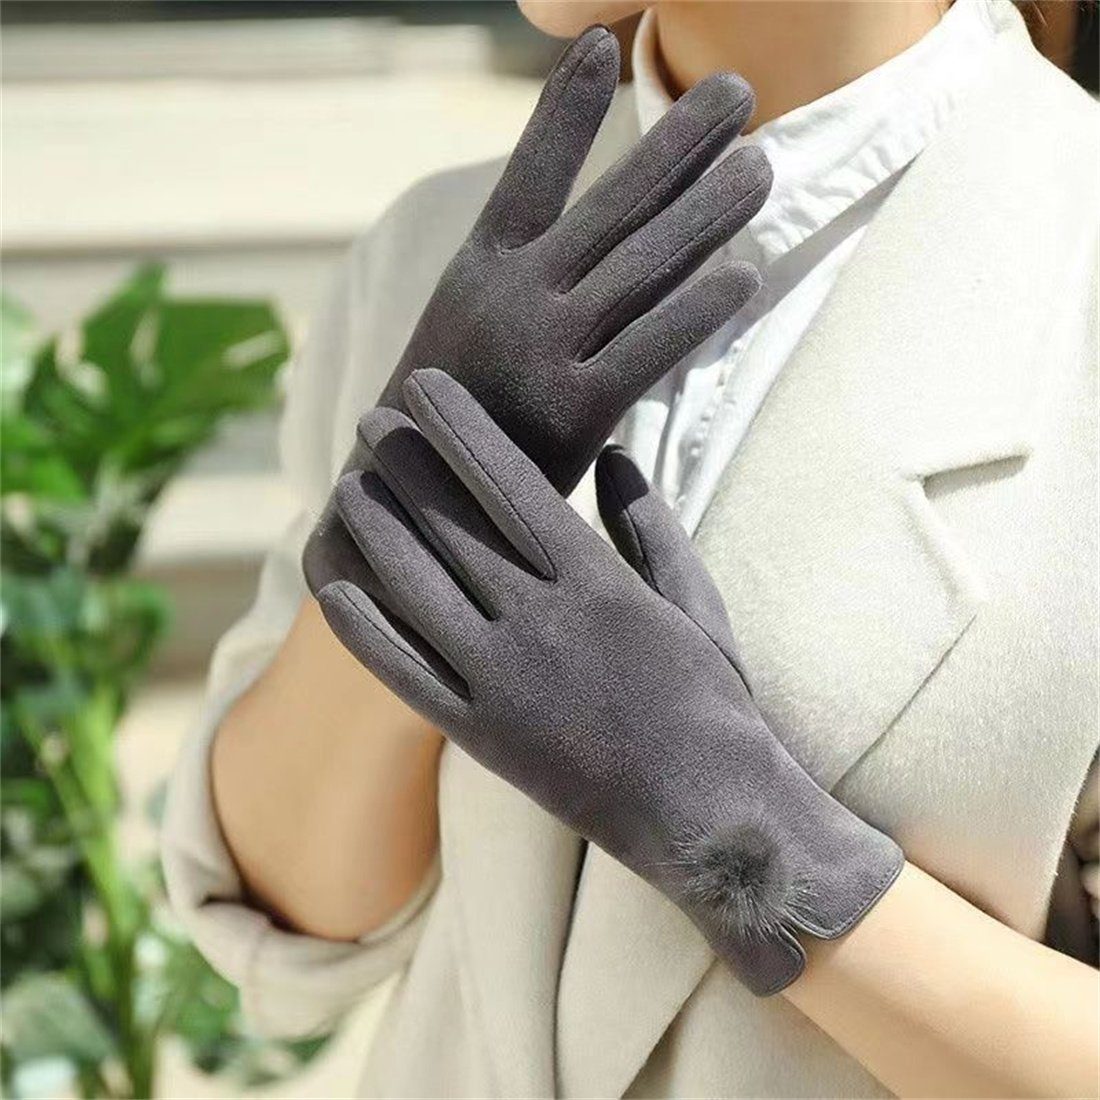 Touchscreen-Handschuhe gepolsterte Grau DÖRÖY Wintermode Damen Handschuhe, Fleecehandschuhe warme